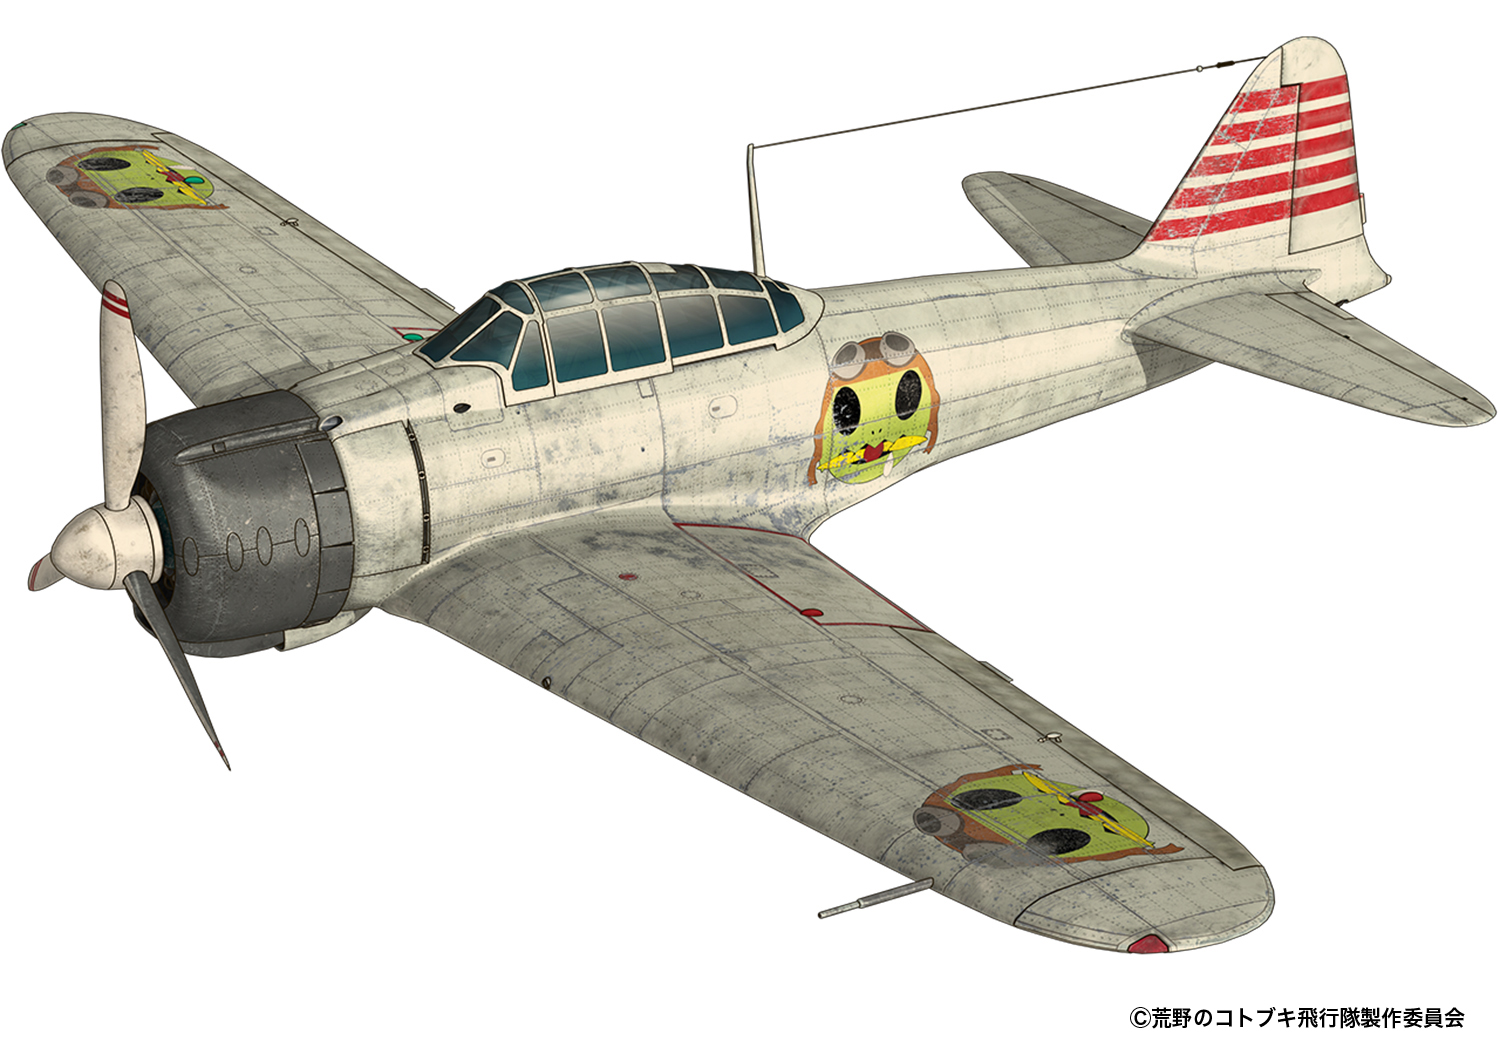 荒野のコトブキ飛行隊『零戦二一型』1/72 プラモデル-001